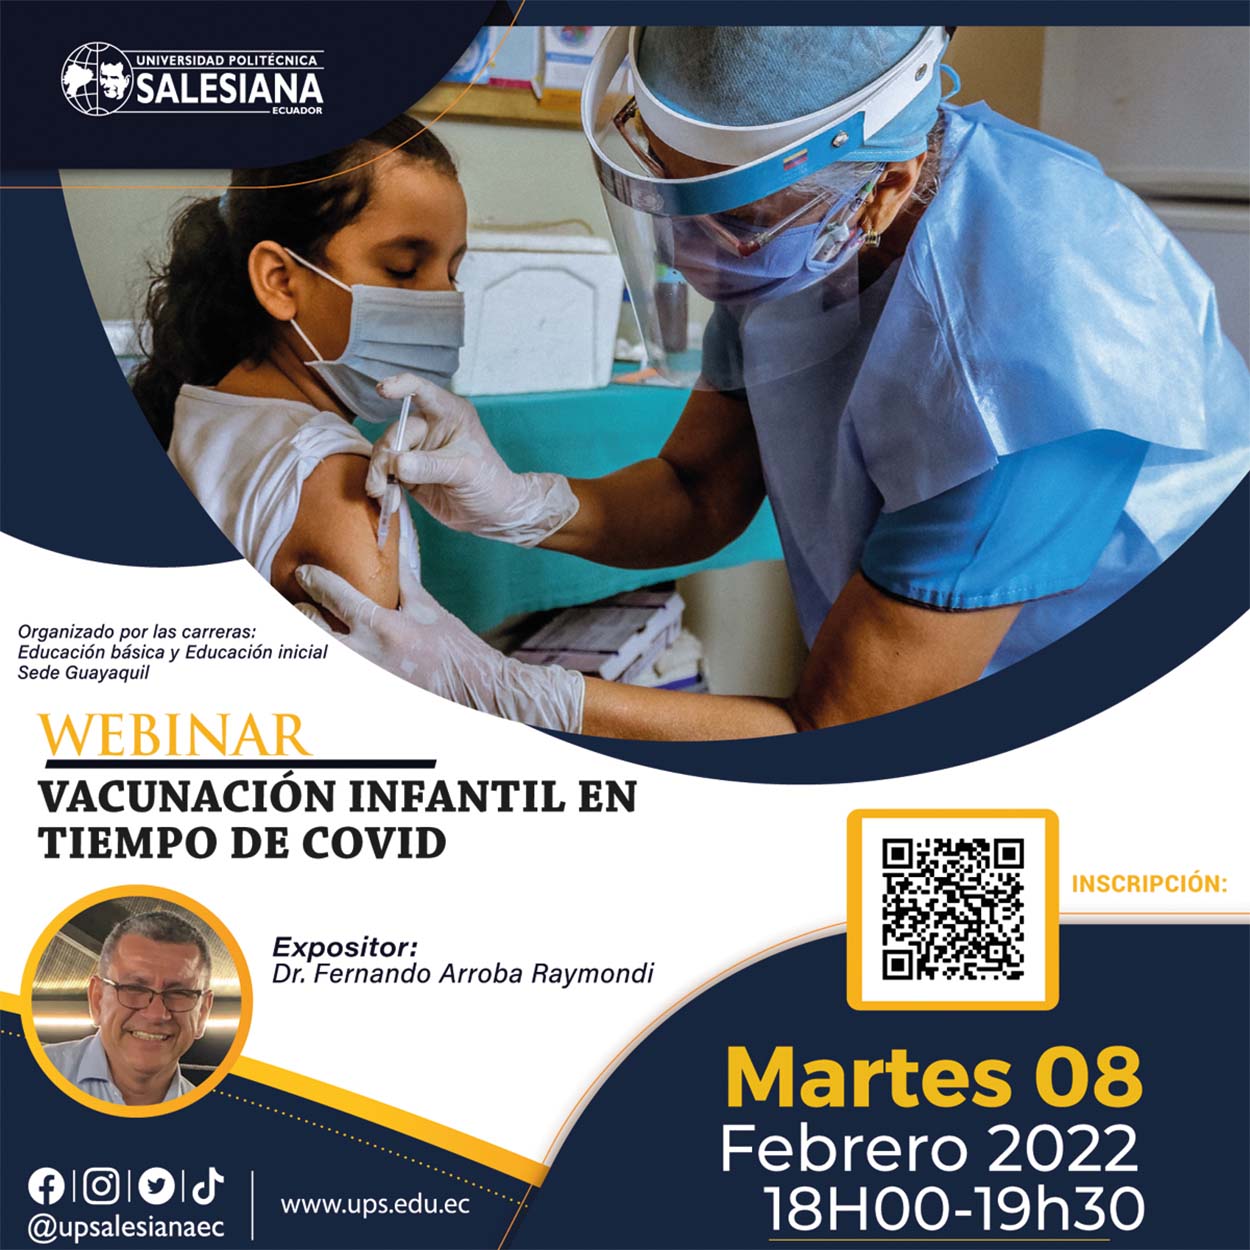 Afiche promocional del Webinar: Vacunación infantil en tiempo de Covid